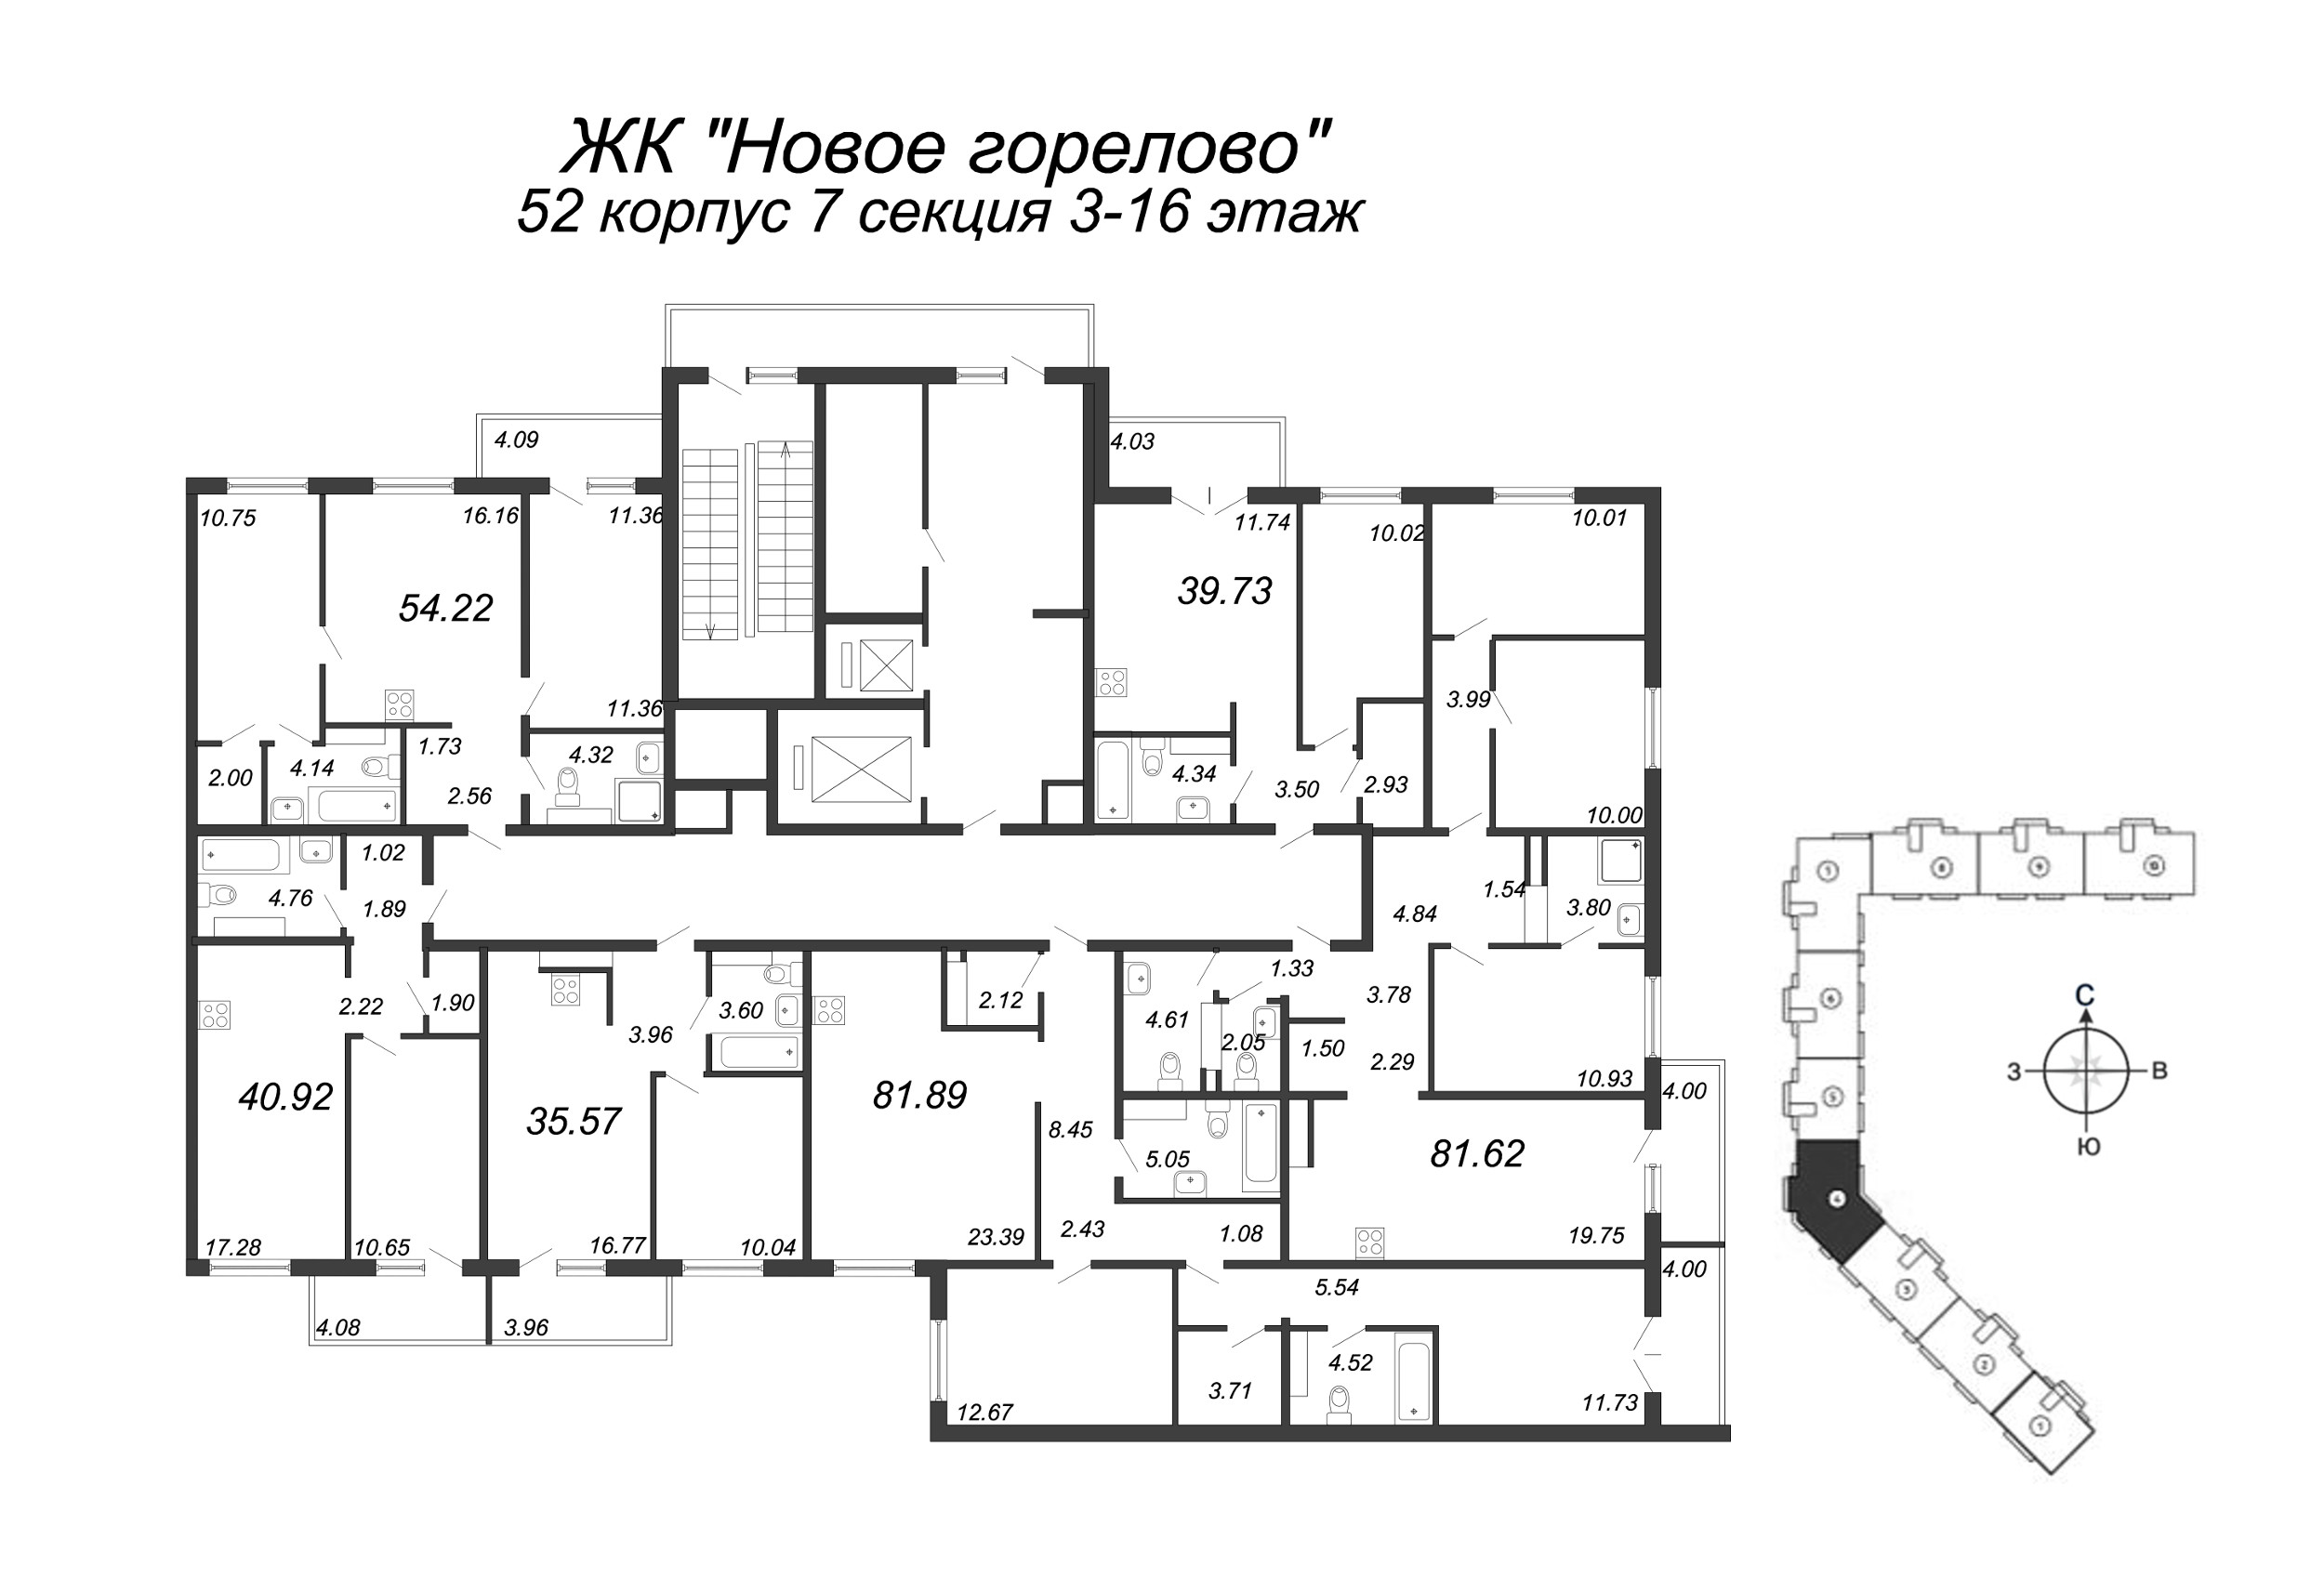 3-комнатная (Евро) квартира, 81.5 м² в ЖК "Новое Горелово" - планировка этажа